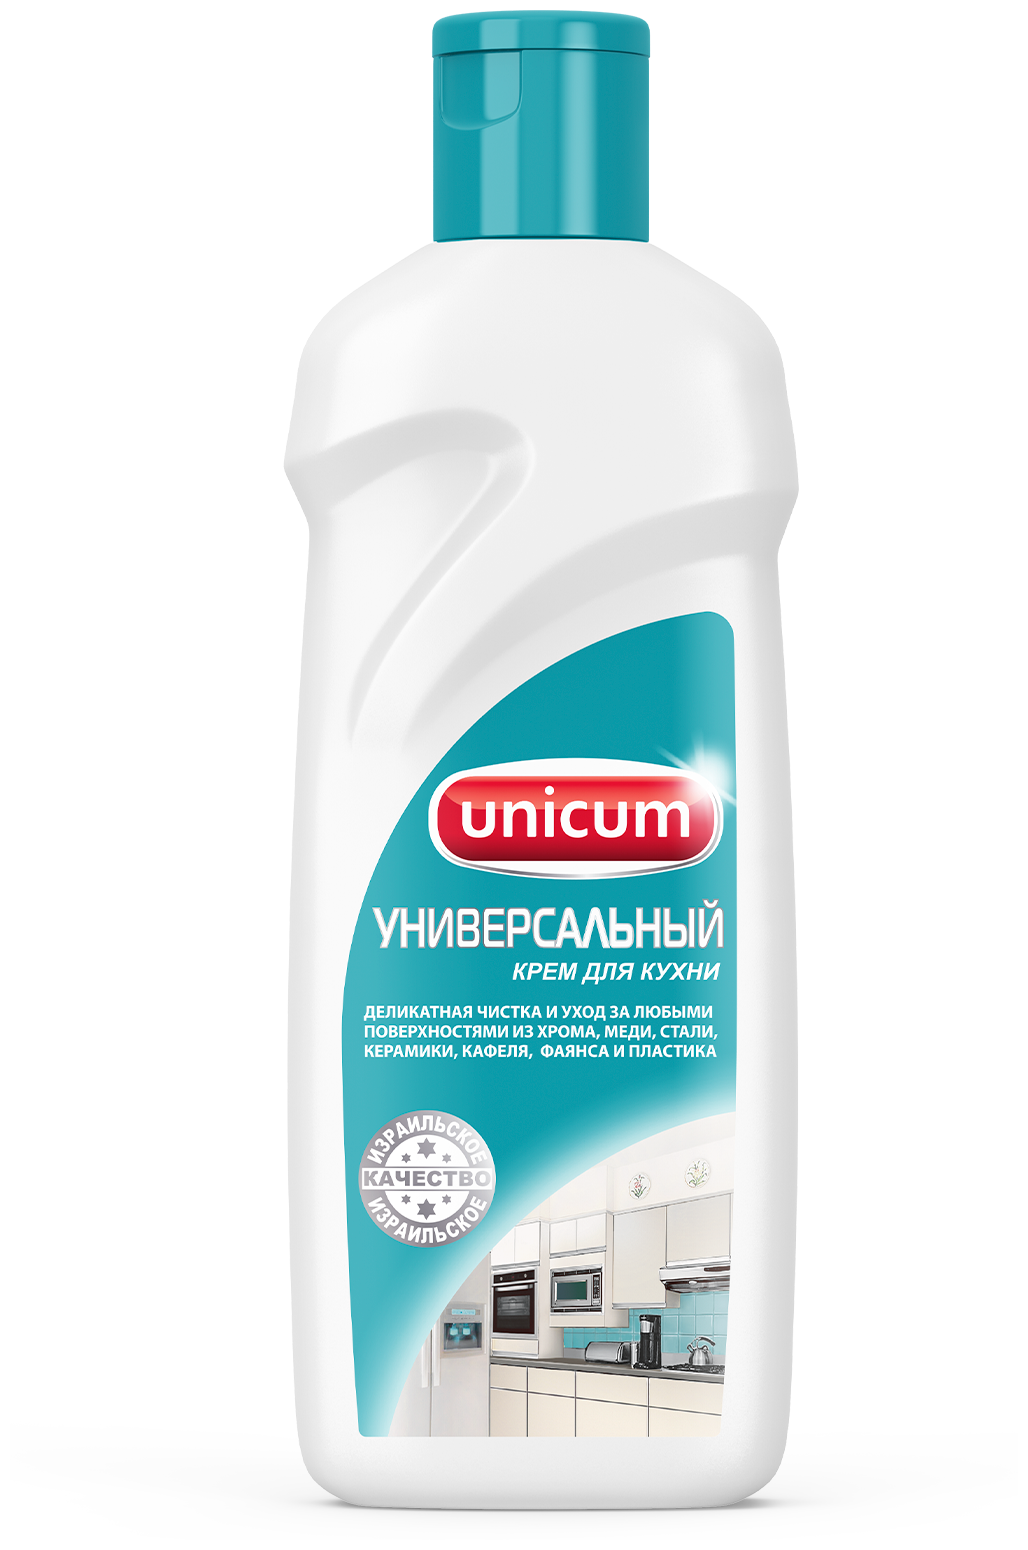 Unicum крем для чистки поверхностей Универсальный 380 мл - фотография № 1